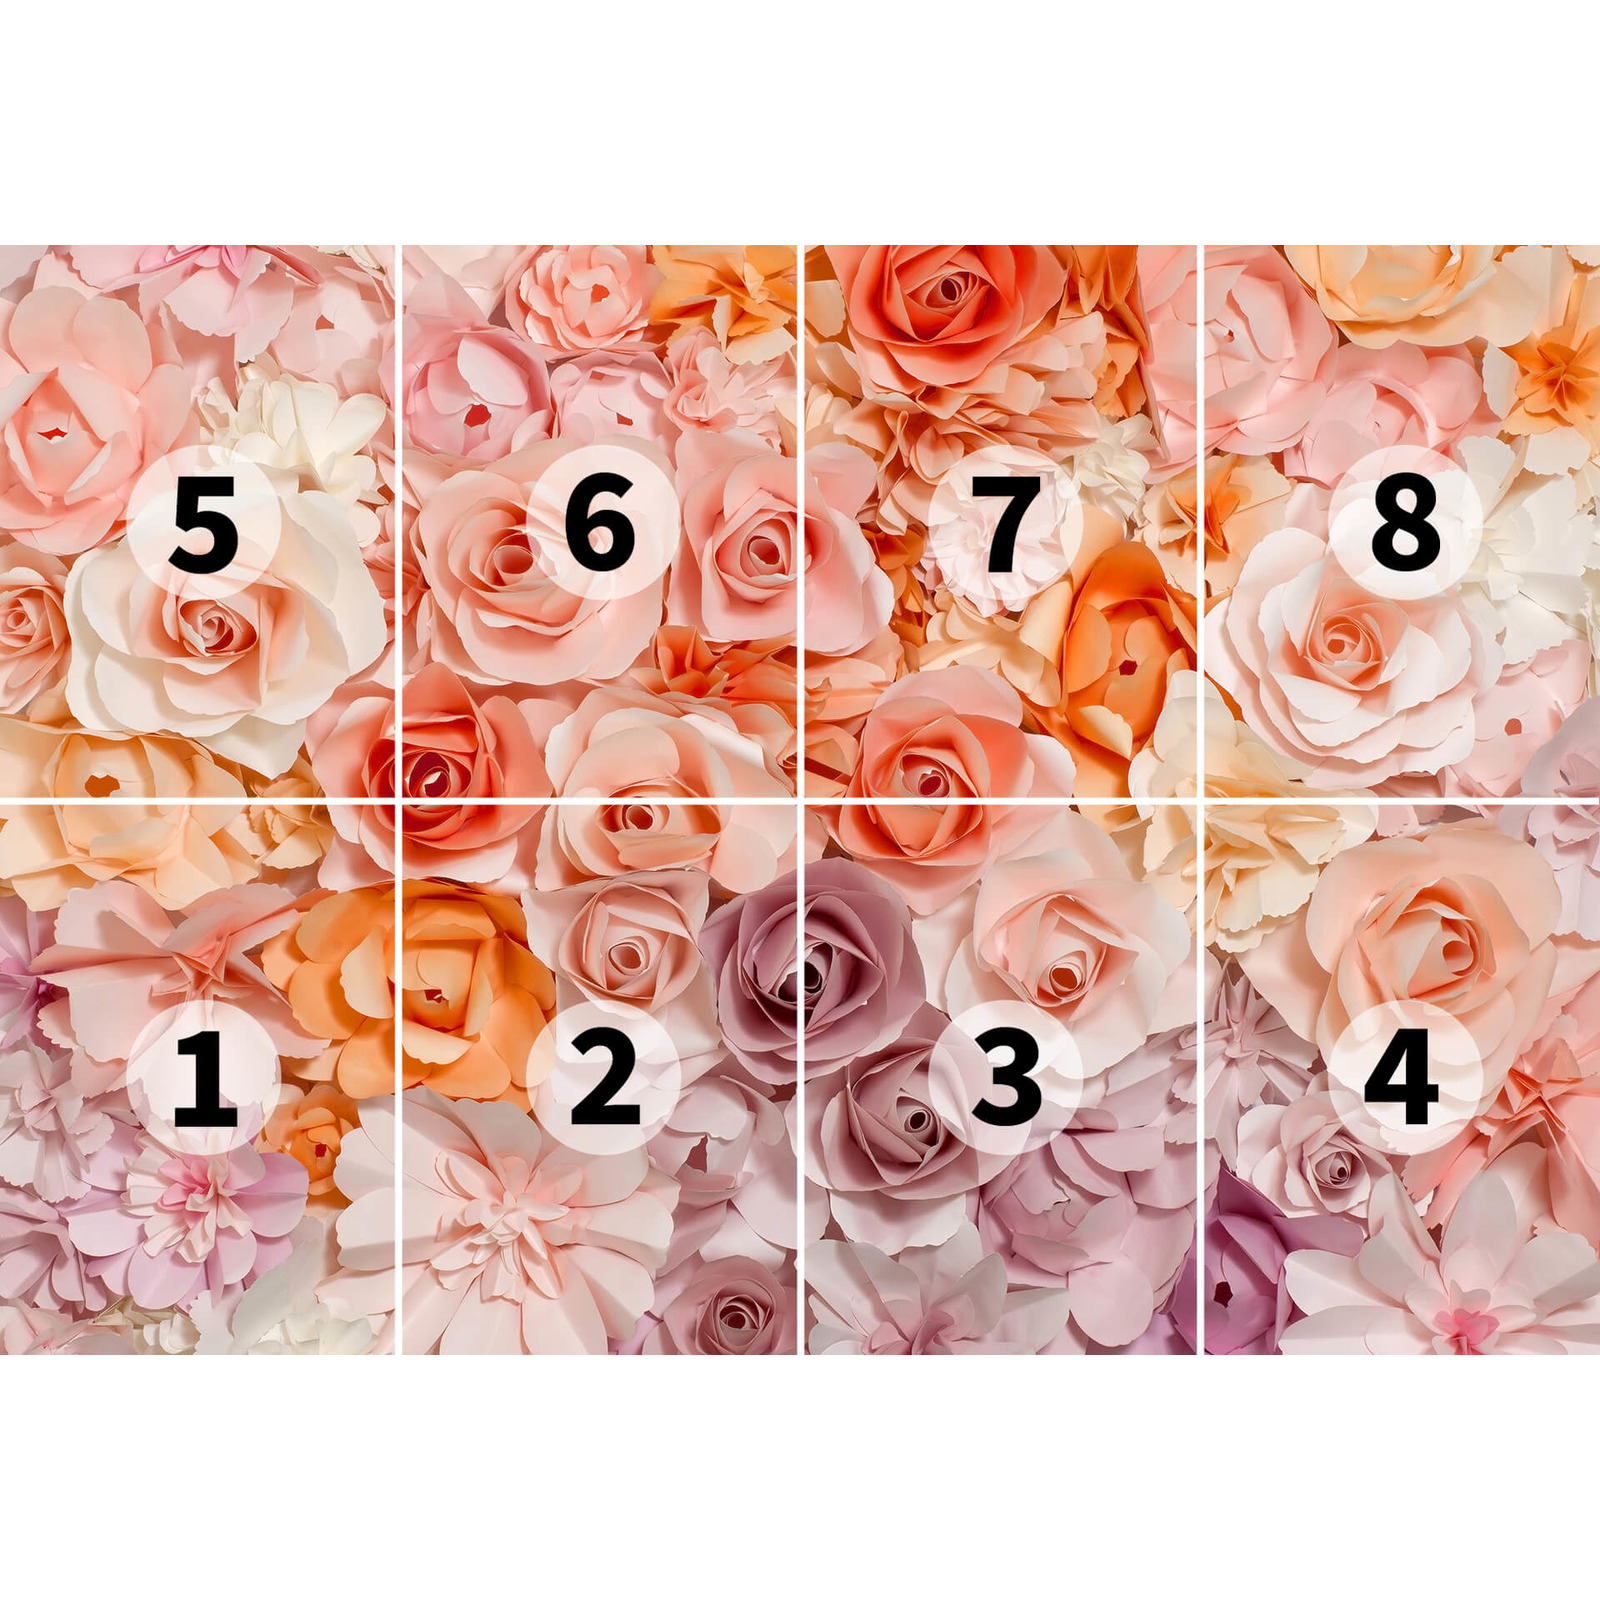             Carta da parati fotografica 3D con motivo a petali di rosa - Rosa, bianco
        